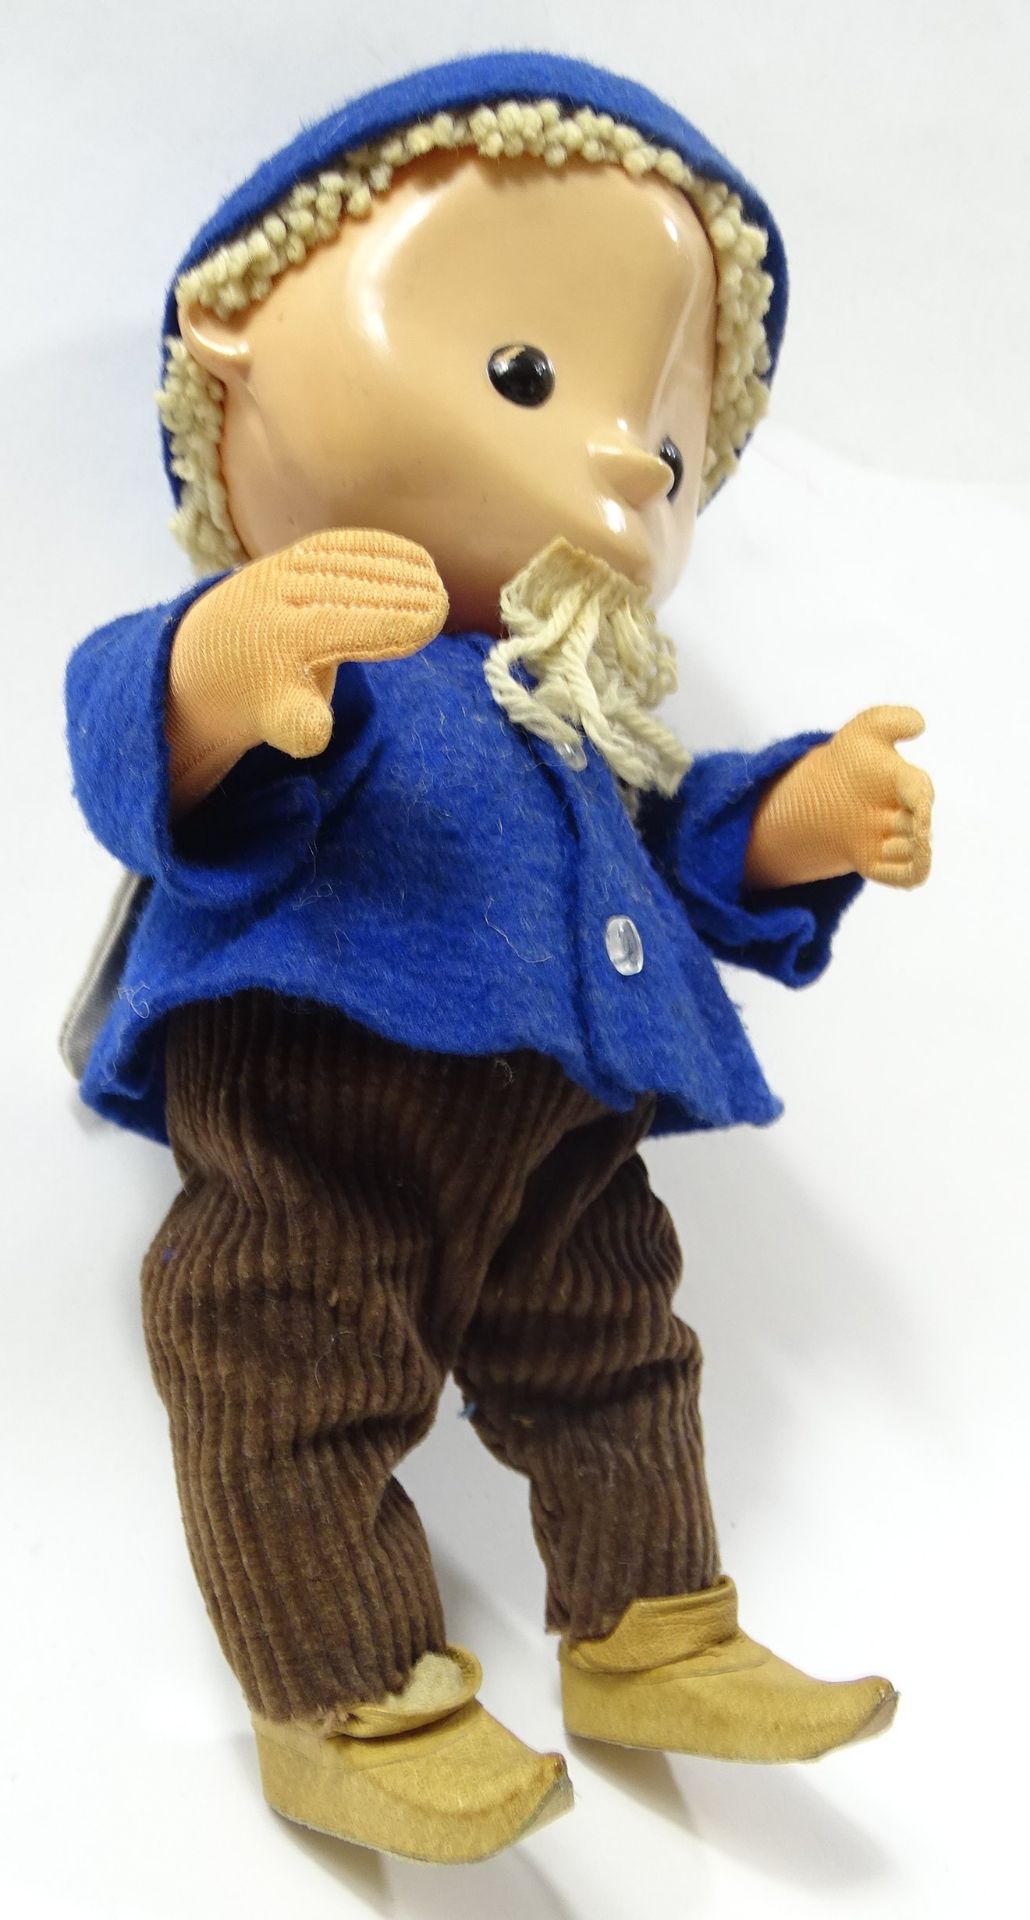 Sandmännchen-Puppe, H. 23 cm, Füße und Kopf Kunstsoff, Körper Stoff, guter Zustand - Bild 5 aus 6